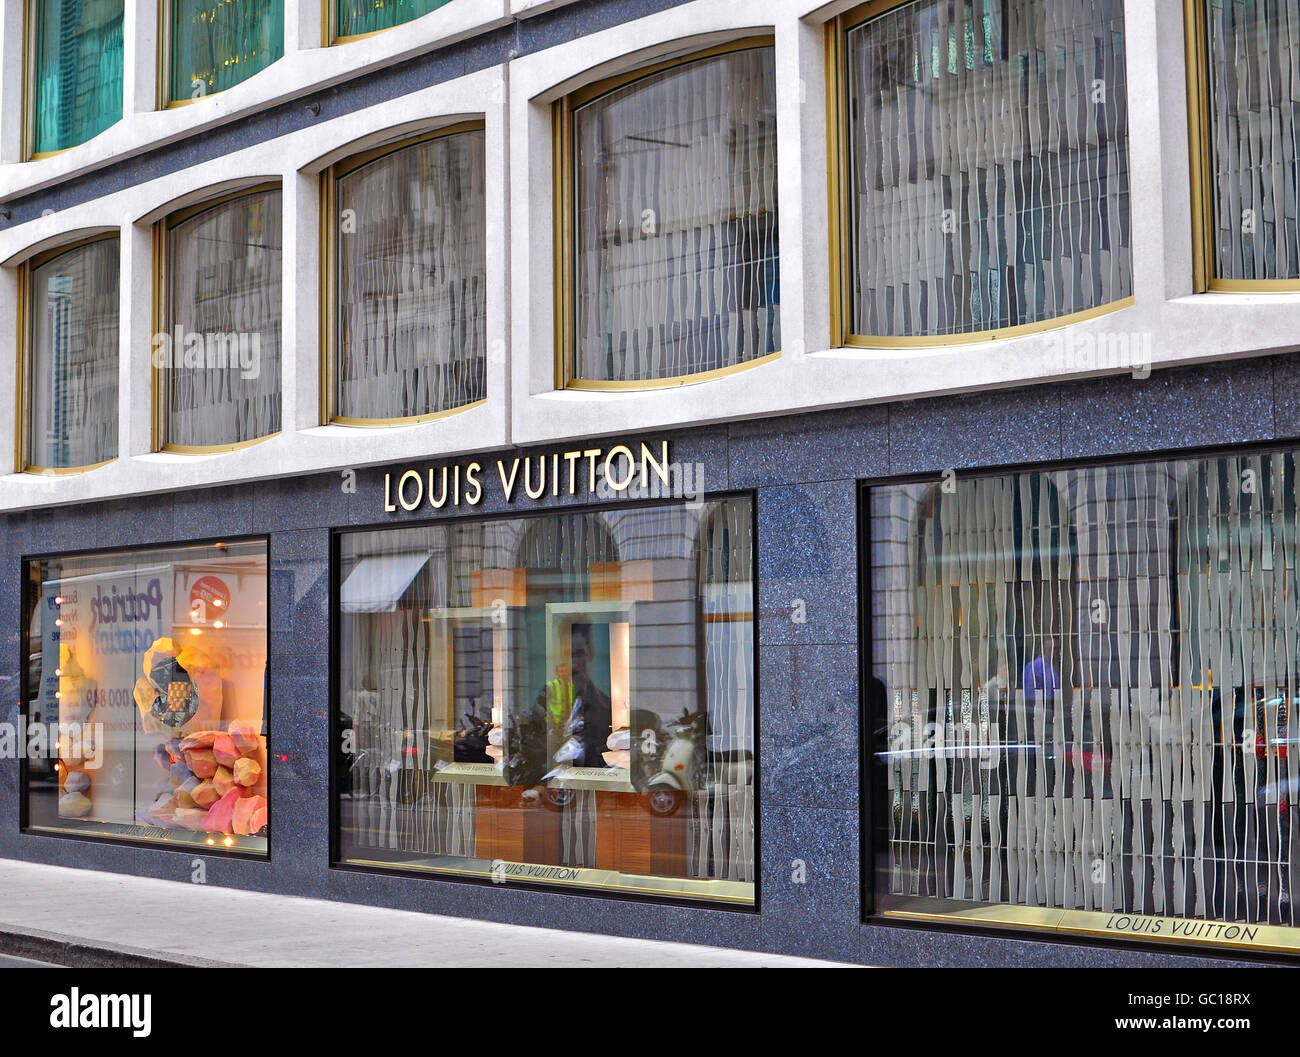 GENEVA, SWITZERLAND - SEPTEMBER 3: Facade of Louis Vuitton store in Geneva on September 3, 2015. Stock Photo